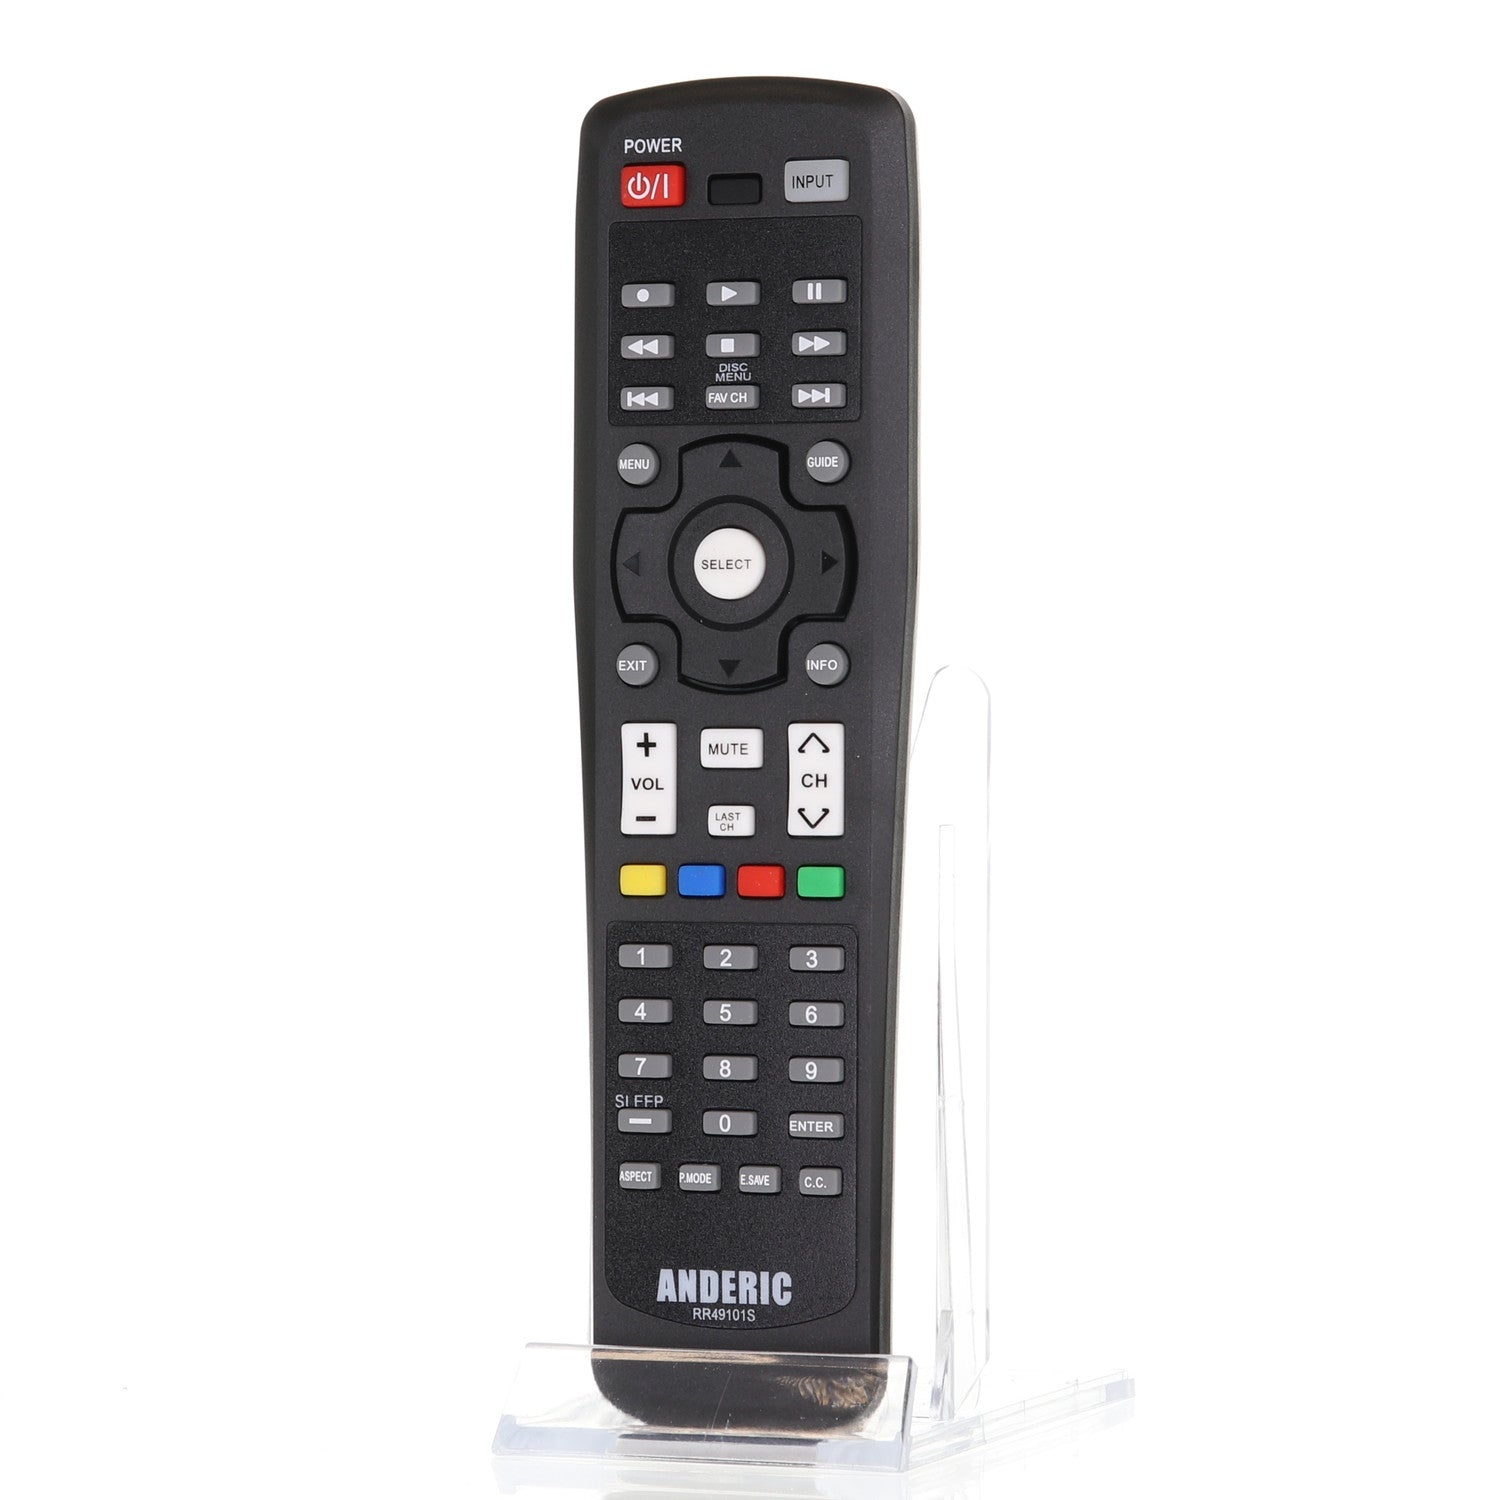 RR49101S Remote Control for Hitachi® TVs